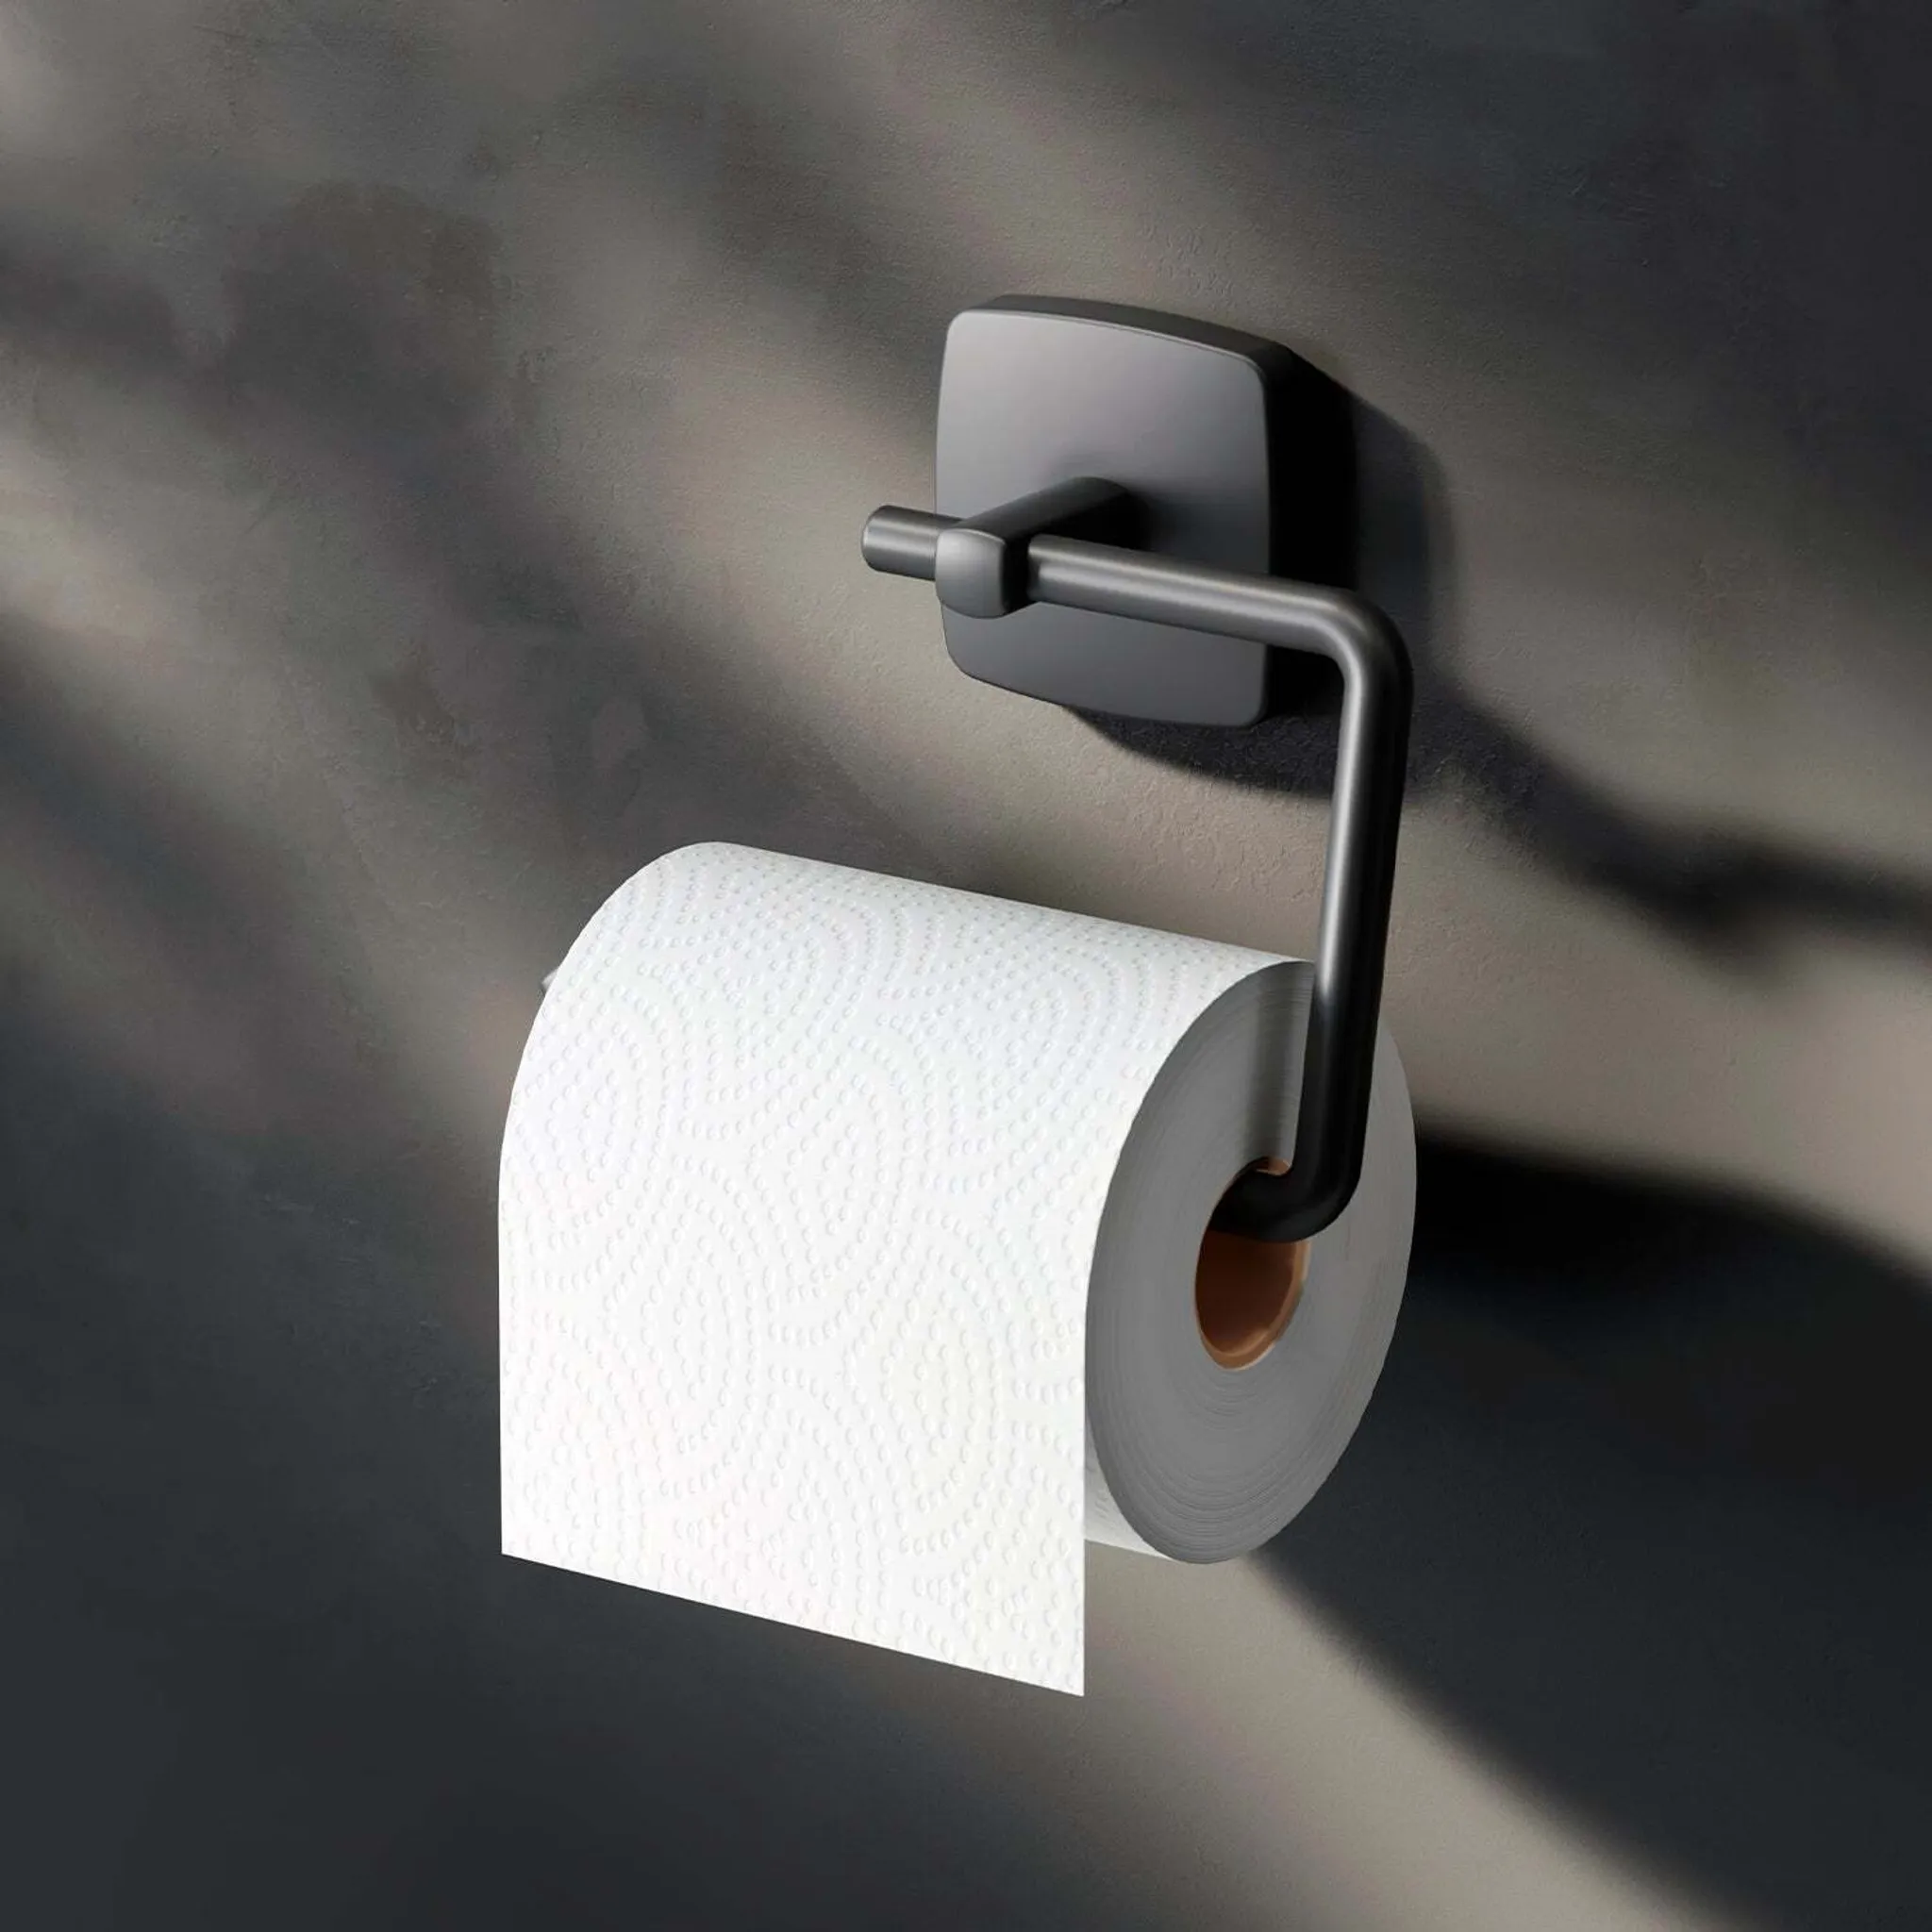 Toilettenpapierhalter Wandmontage ohne bohren